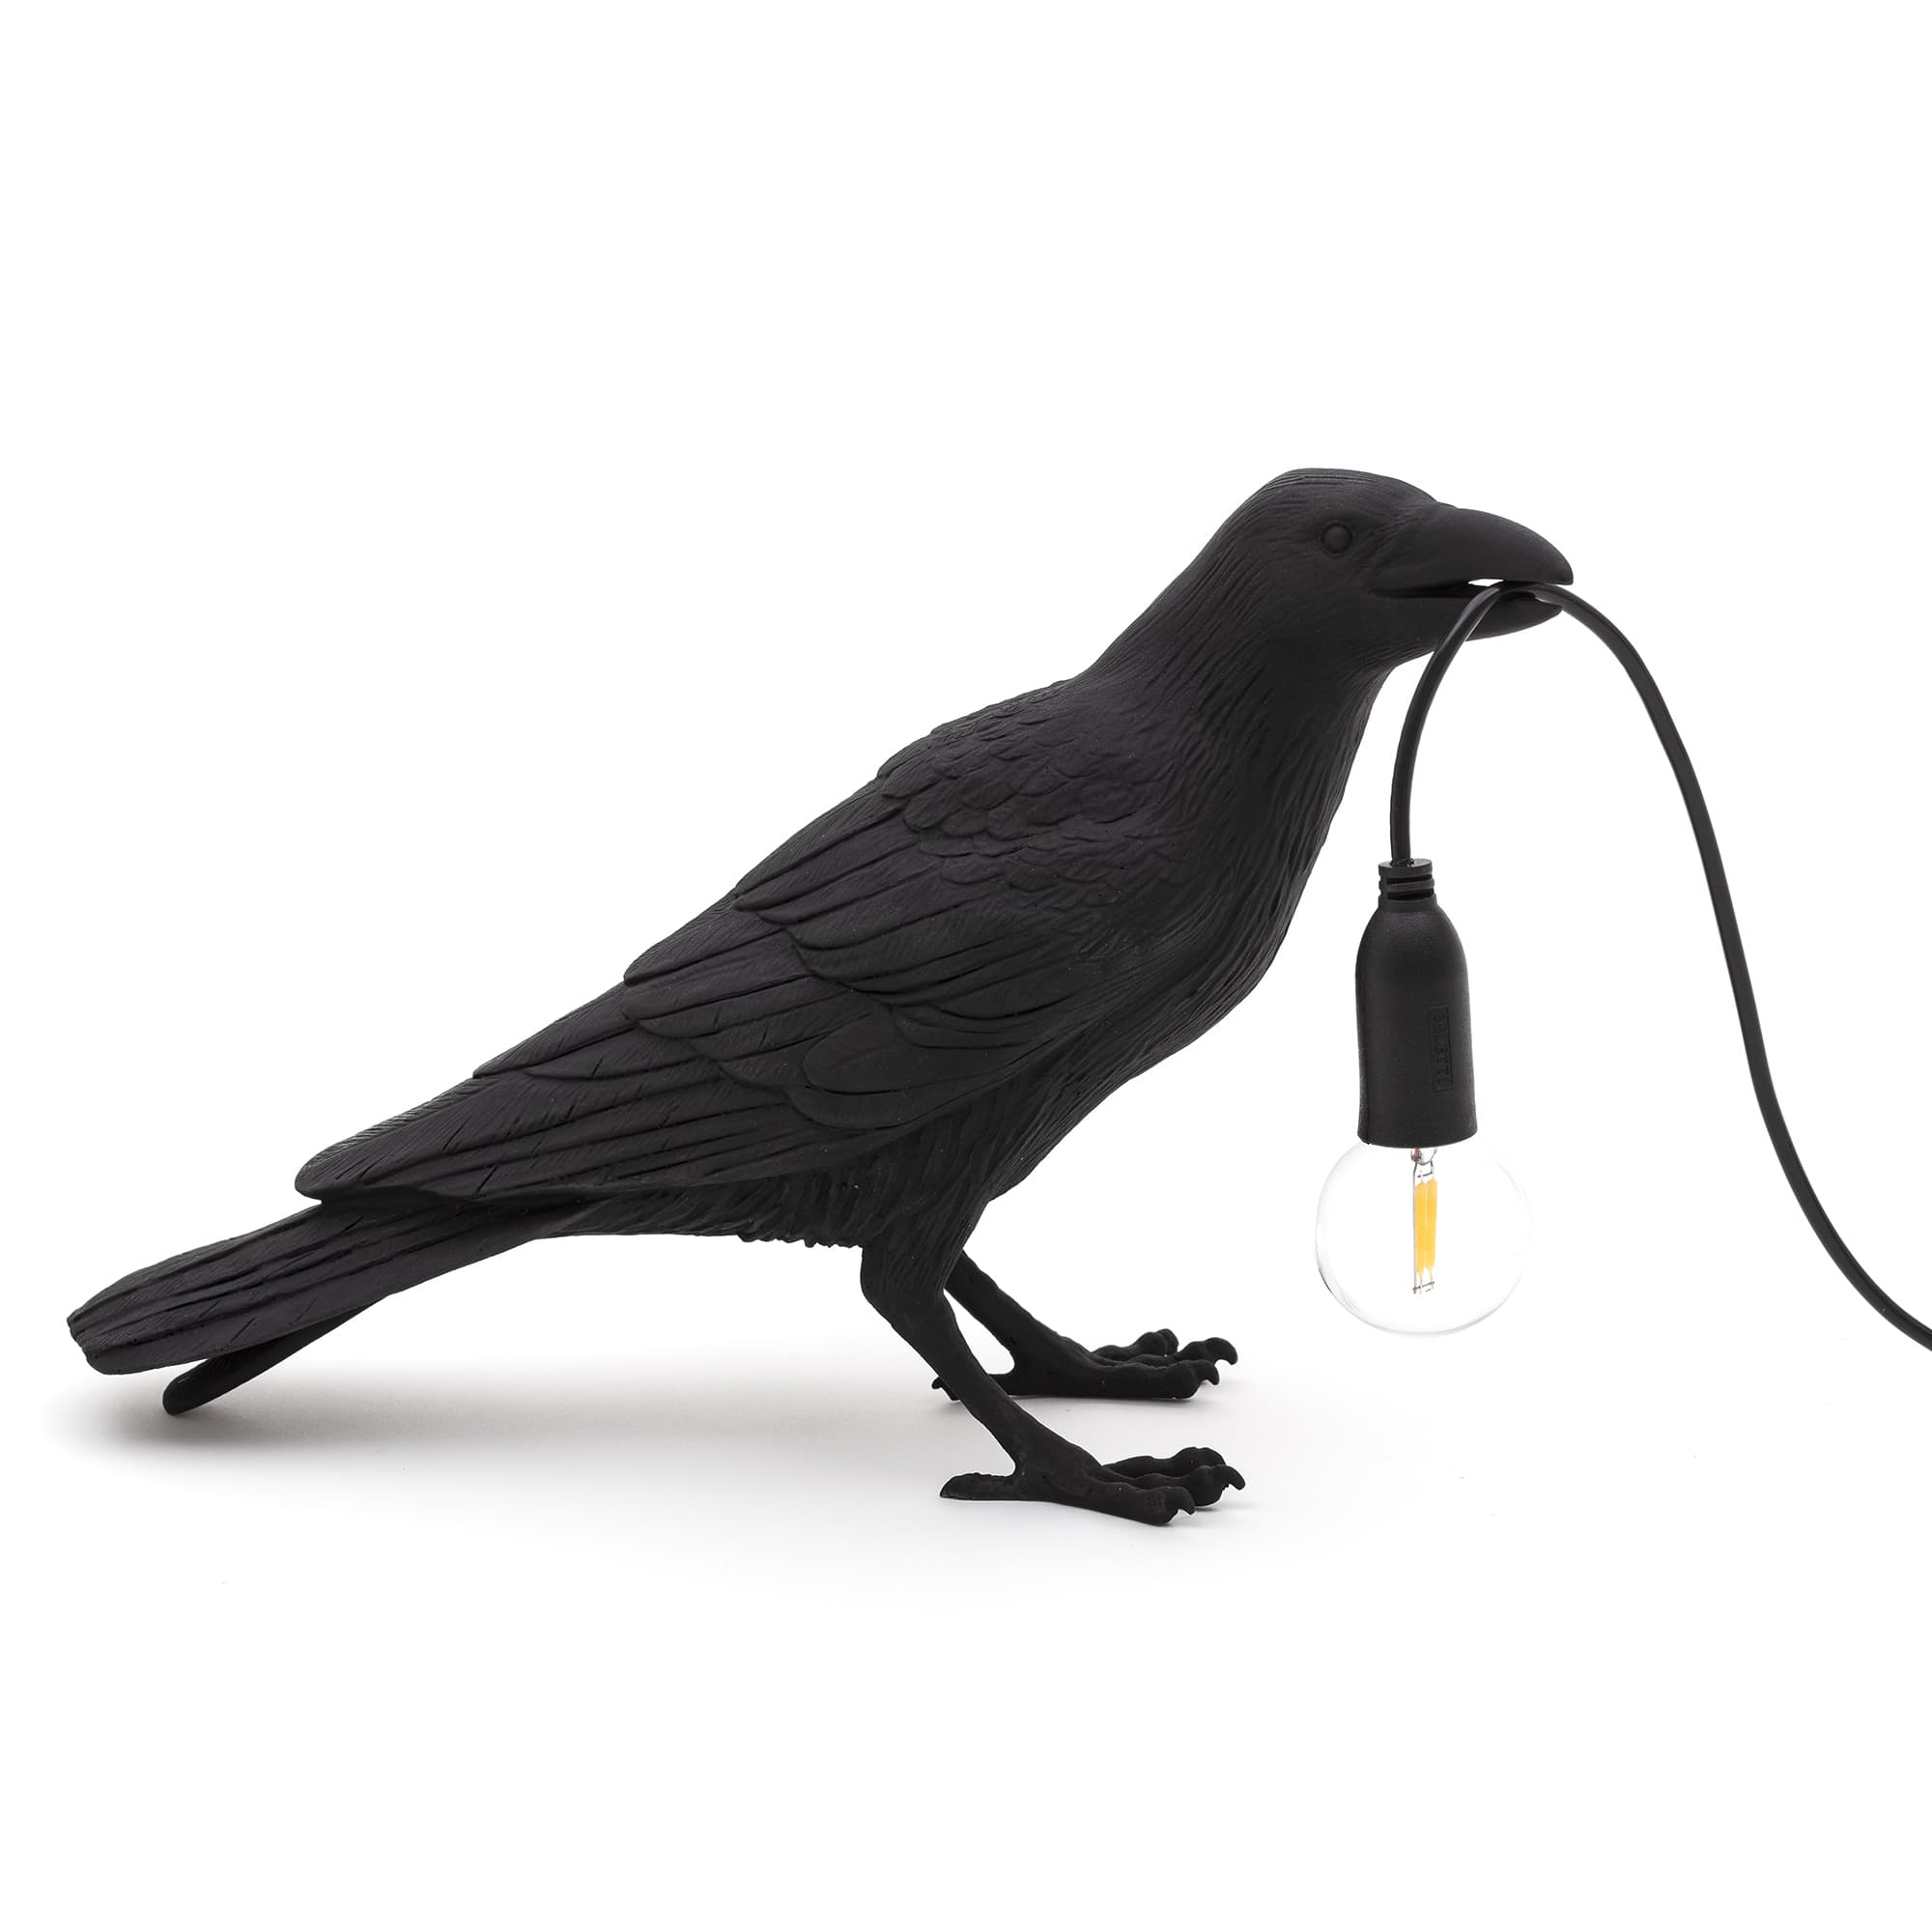 Настольная лампа Bird Black Waiting